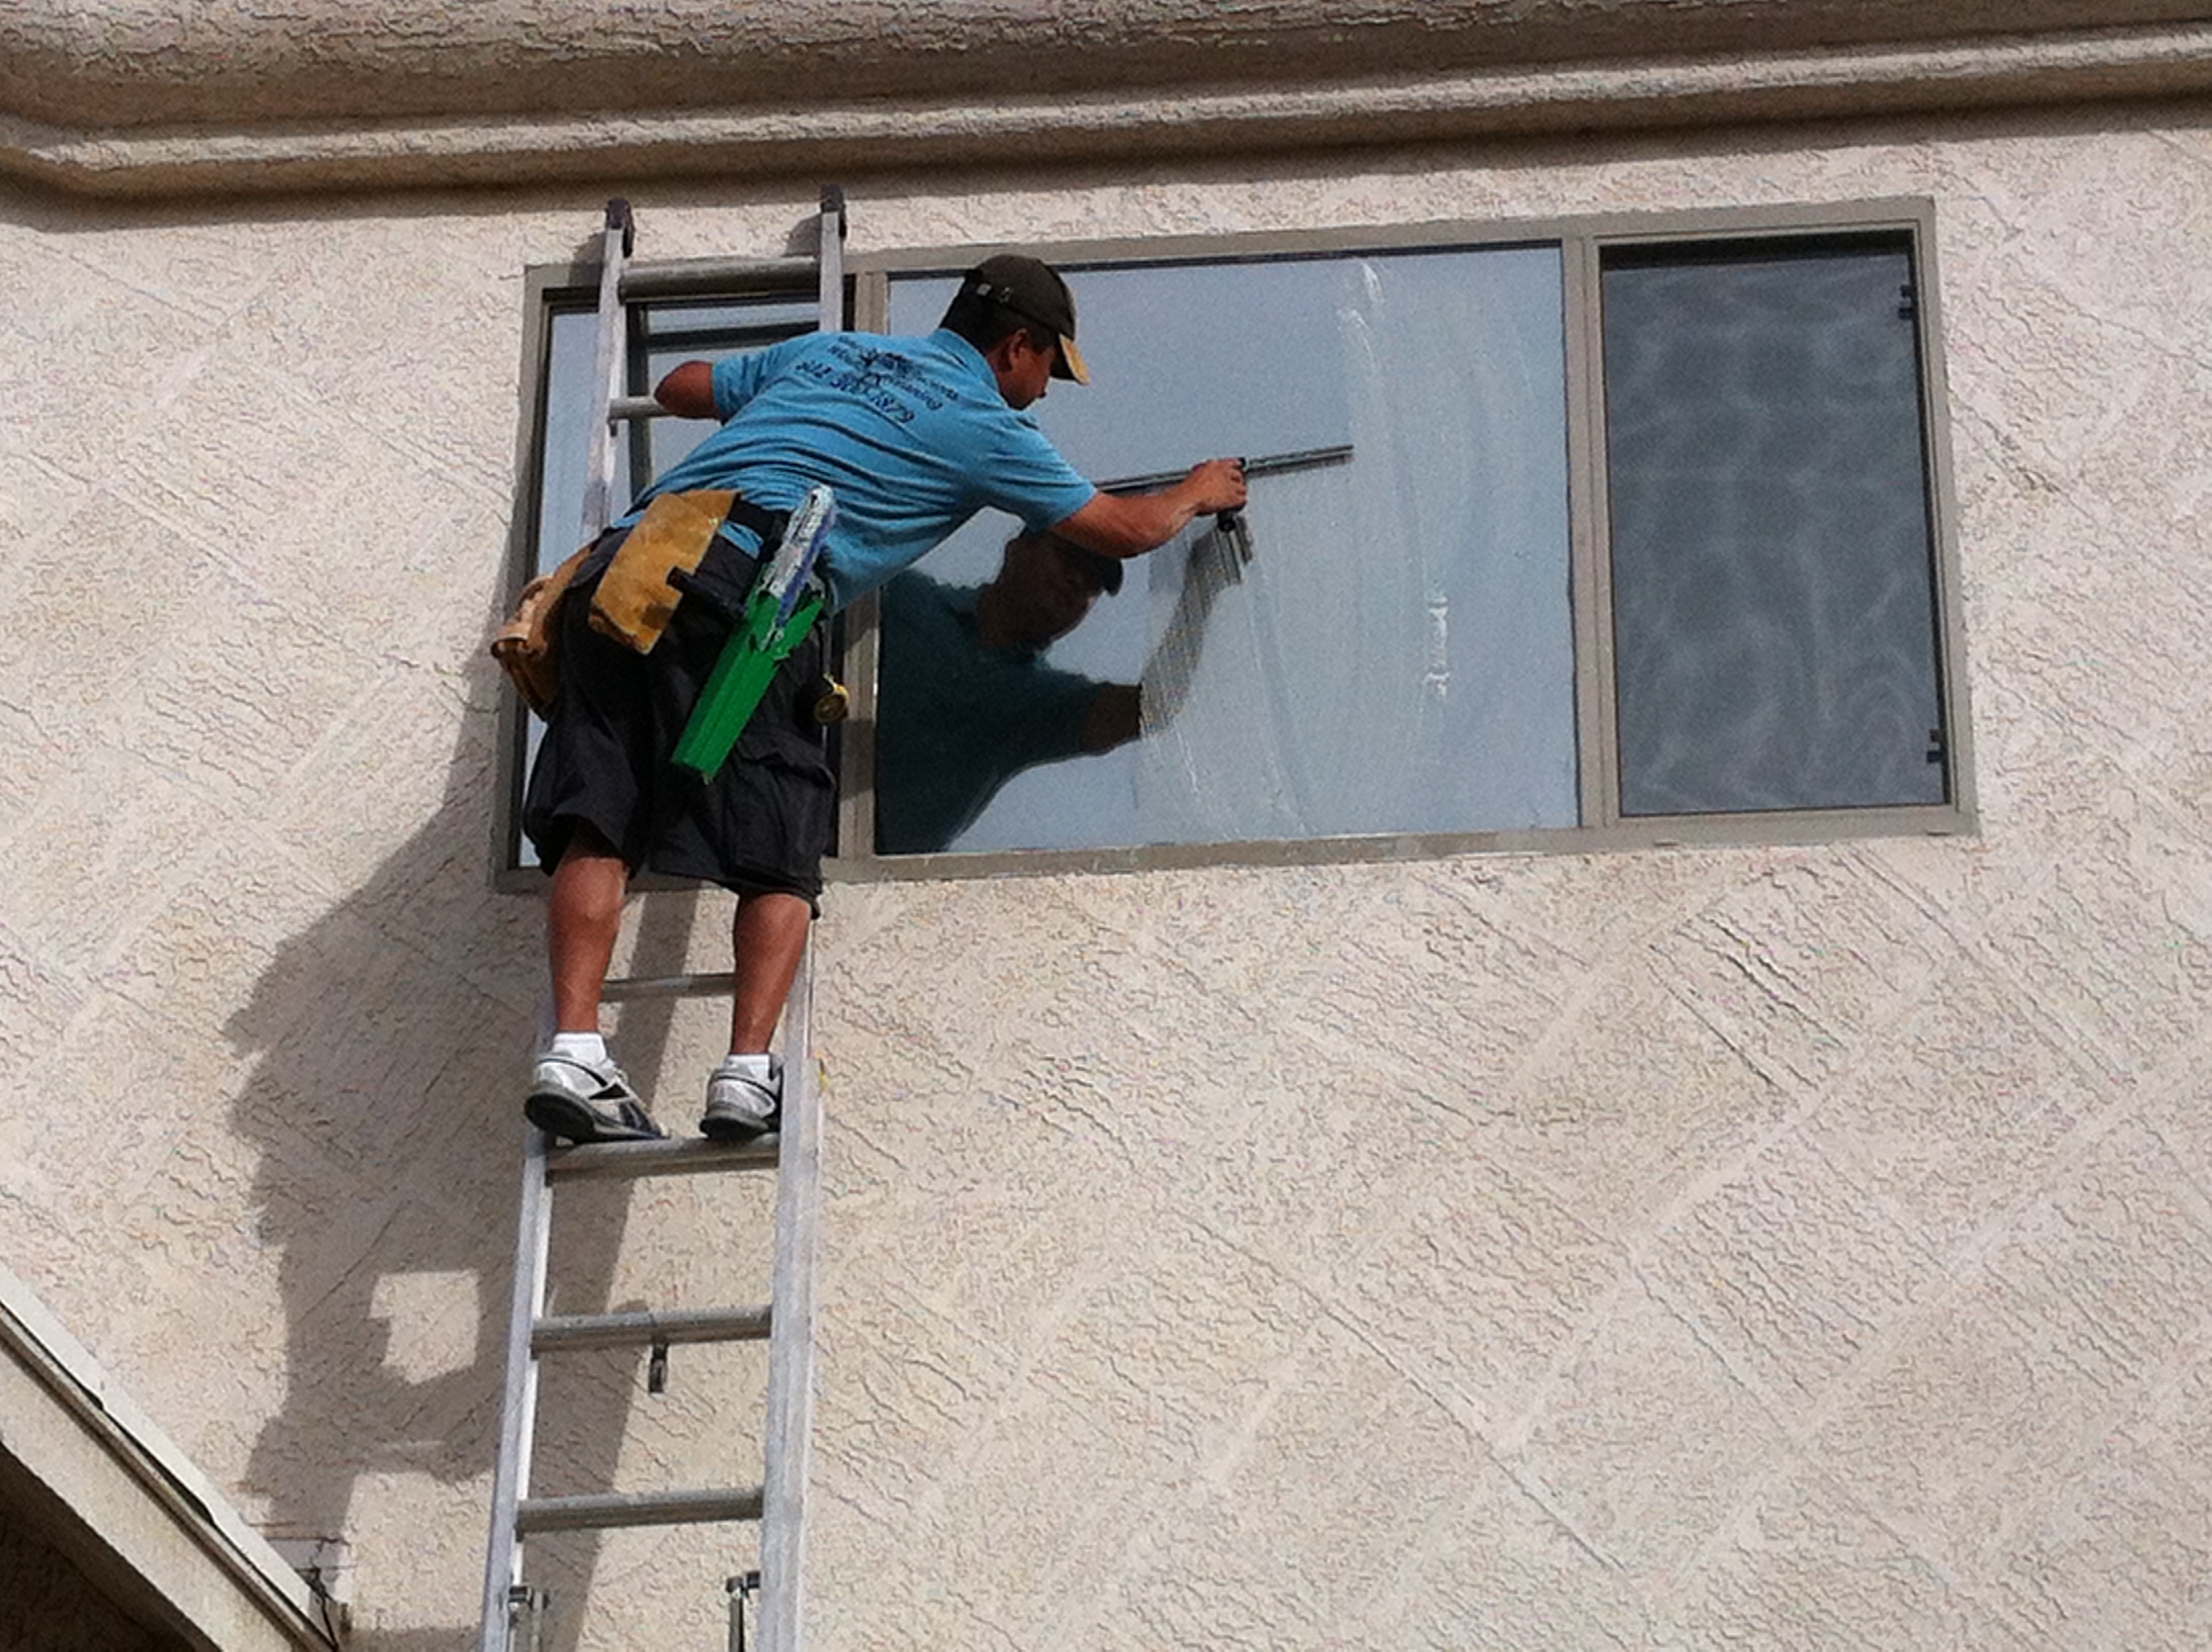 Francisco Washing windows